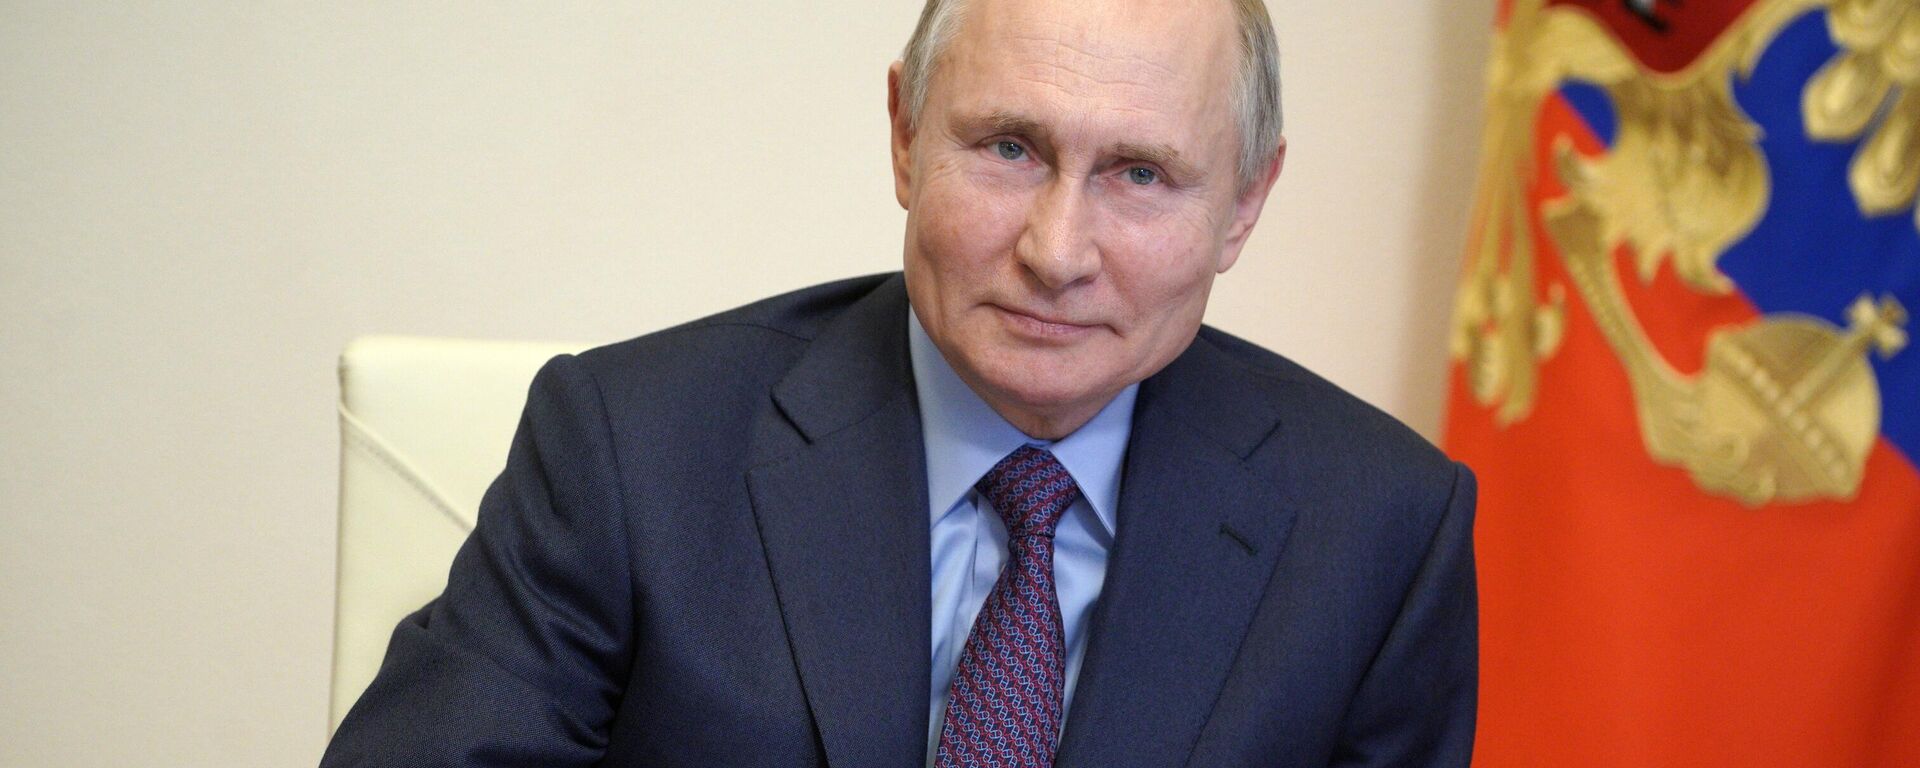 Prezident RF V. Putin provel soveshanie po voprosam narashivaniya proizvodstva vaksin i vaksinatsii naseleniya RF - Sputnik O‘zbekiston, 1920, 24.03.2021